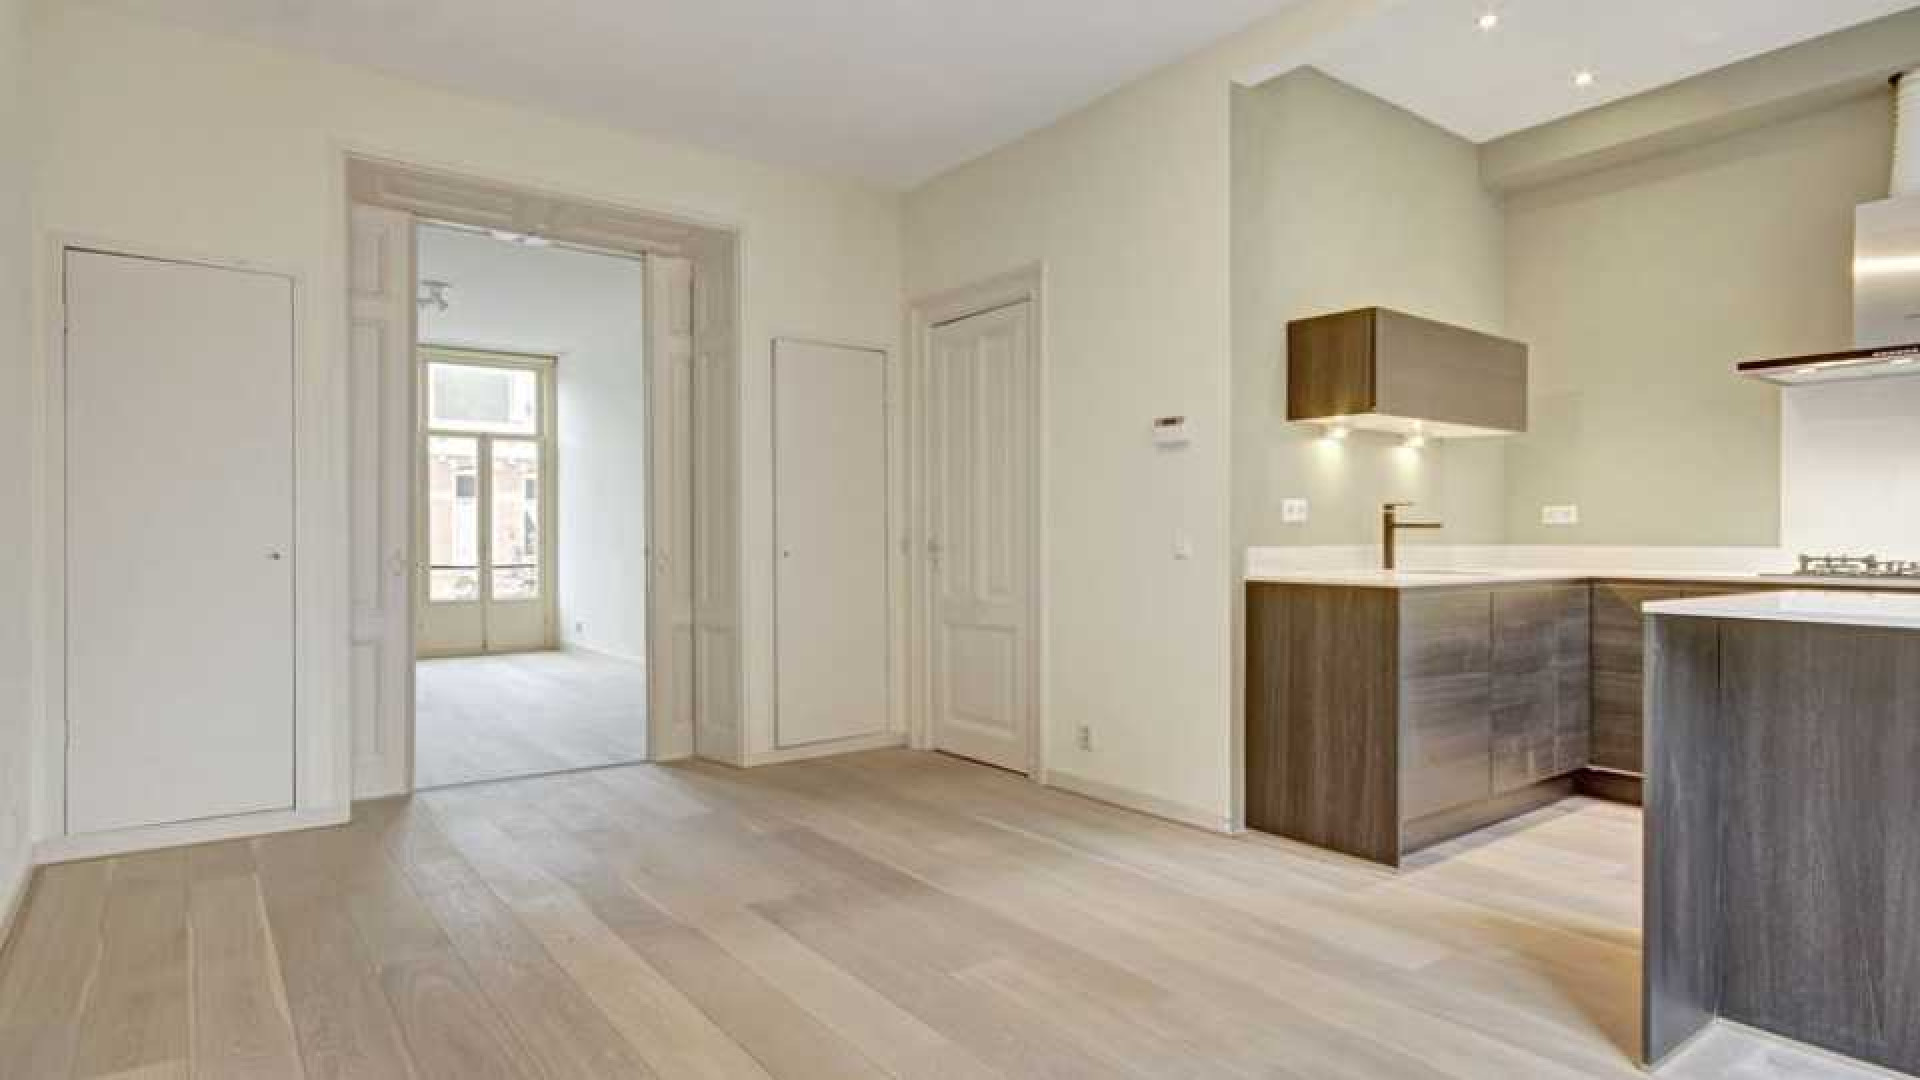 Daphne Deckers en Richard Krajicek zetten hun appartement te huur. Zie foto's 5